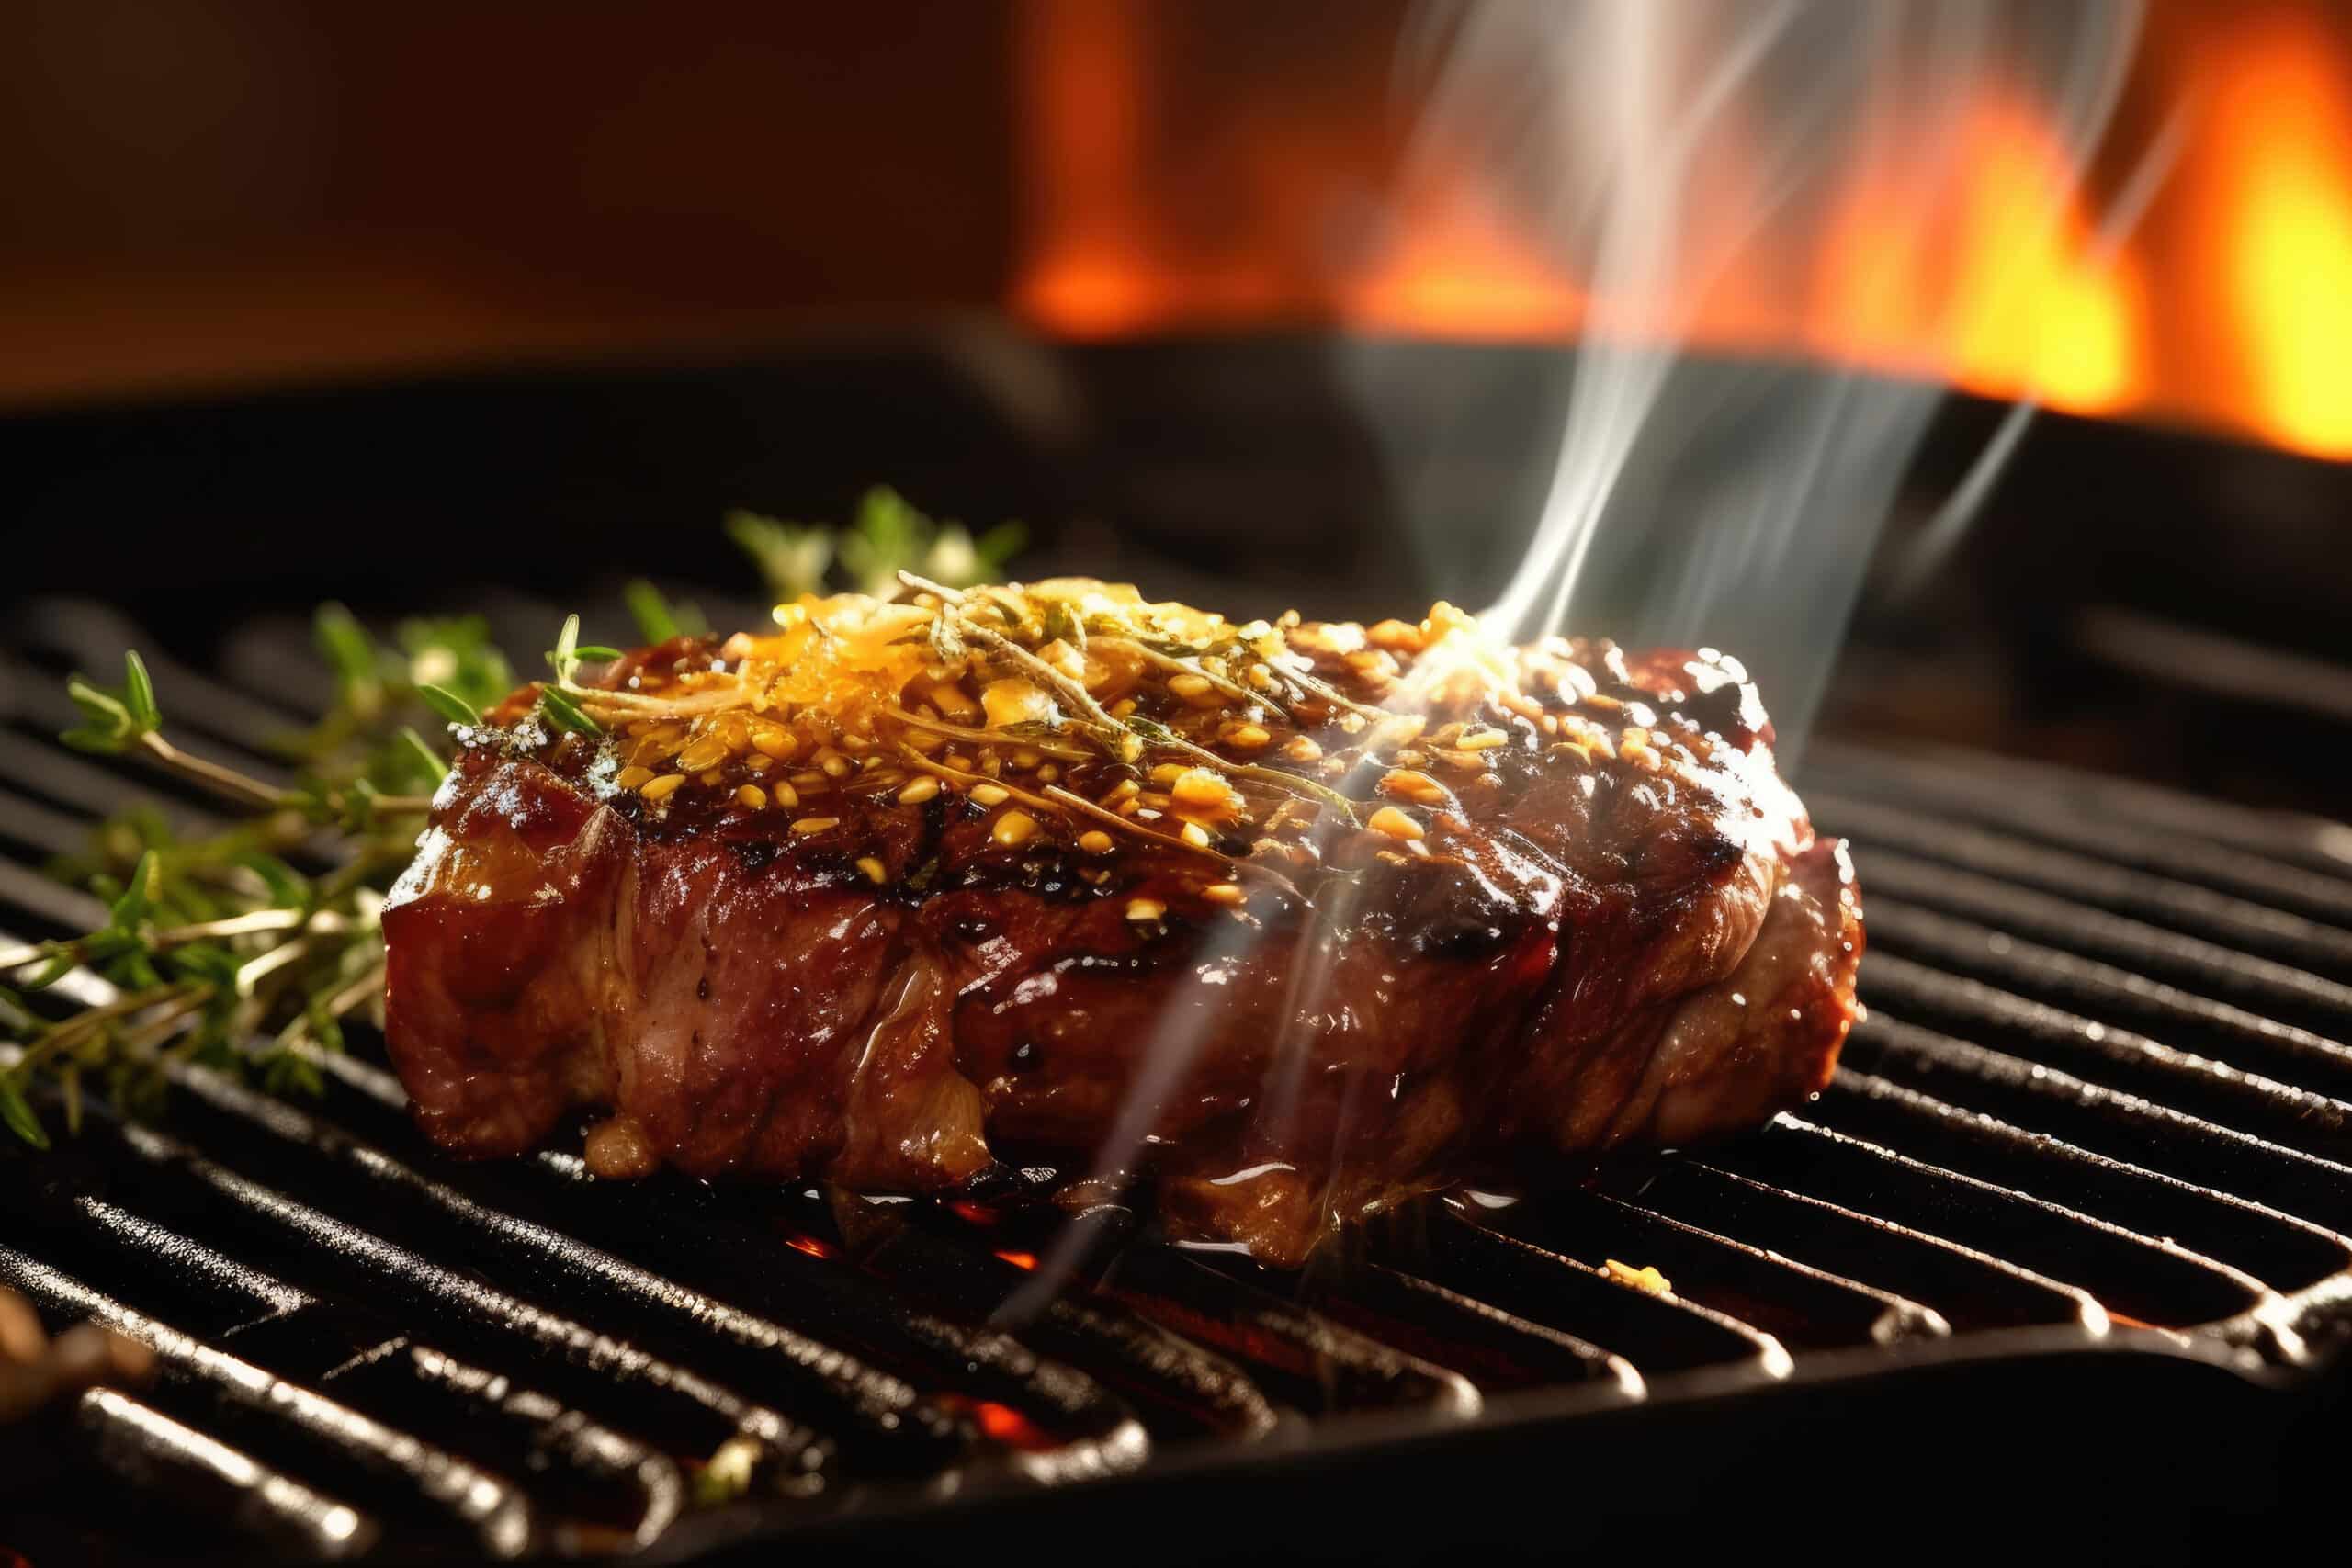 www.appr.com : What Temp To Smoke Steaks On Pellet Grill?